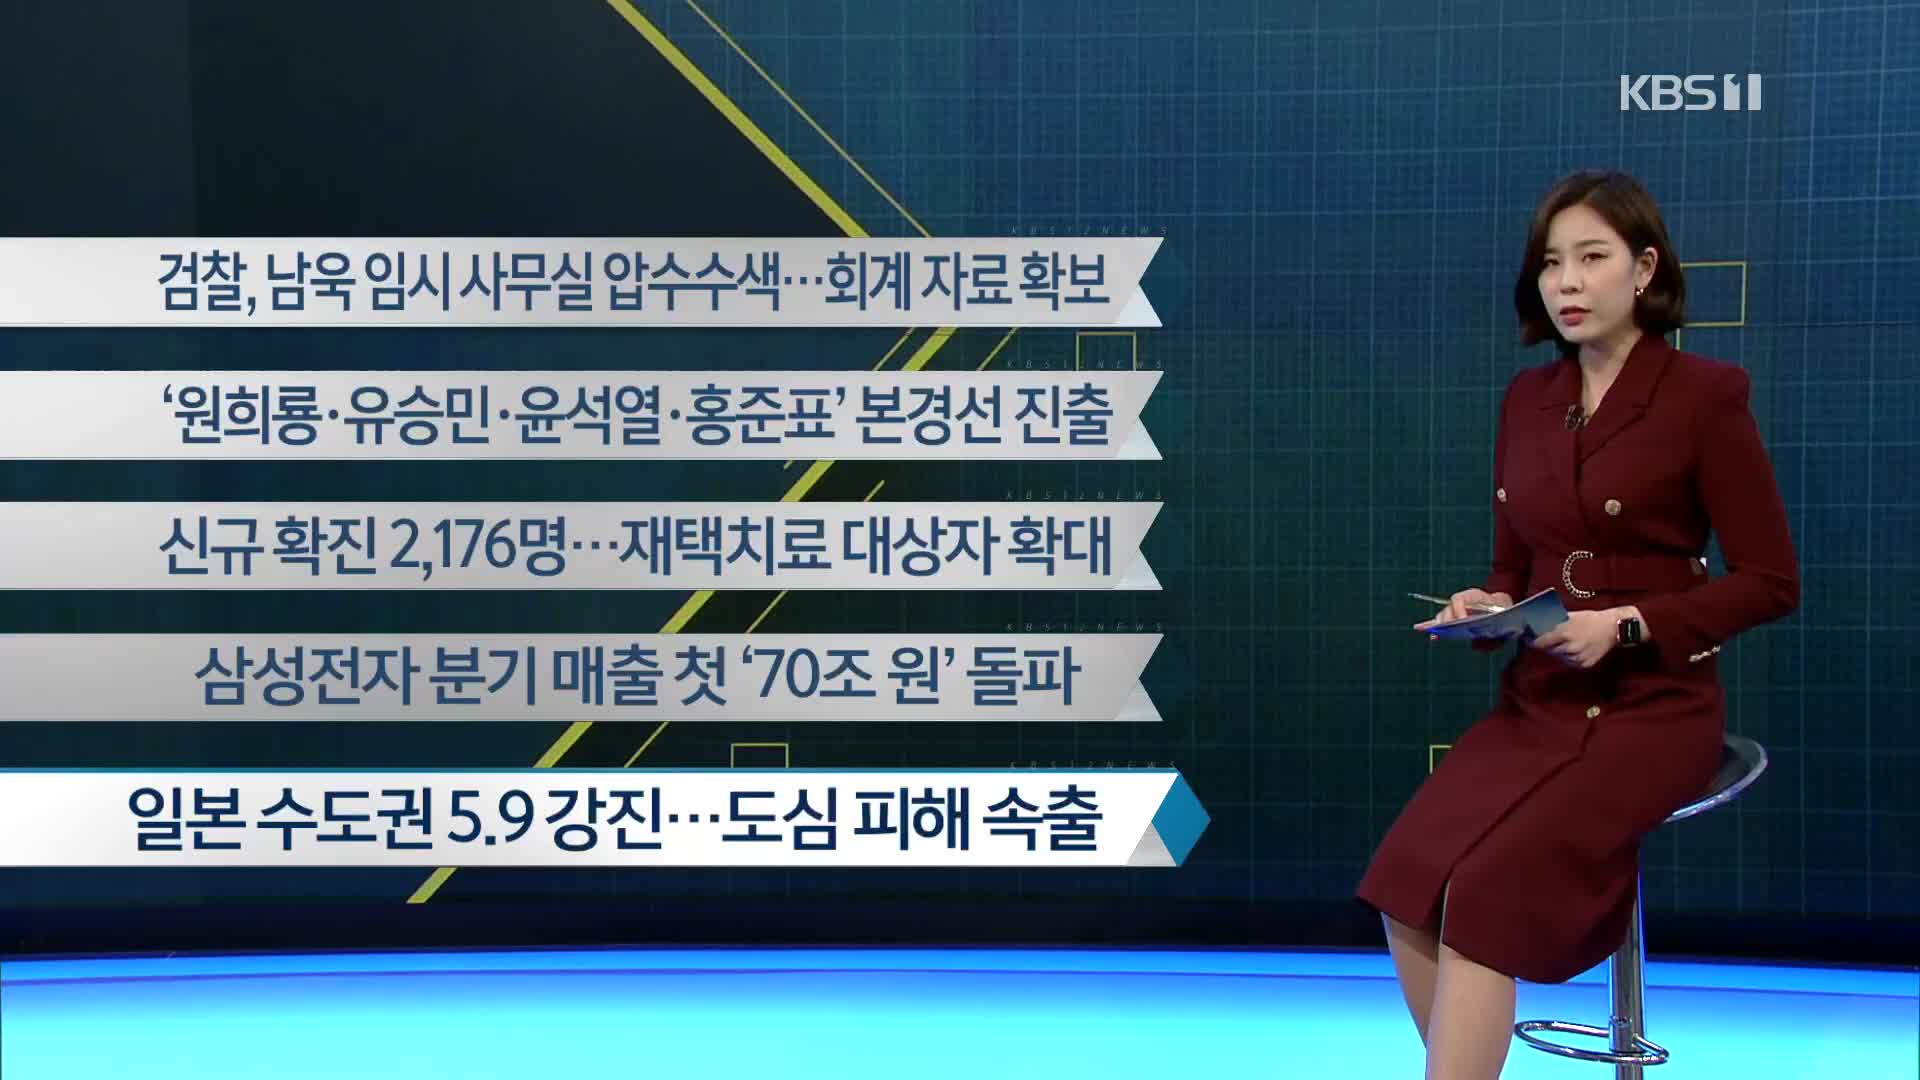 [이 시각 주요뉴스] 검찰, 남욱 임시 사무실 압수수색…회계 자료 확보 외